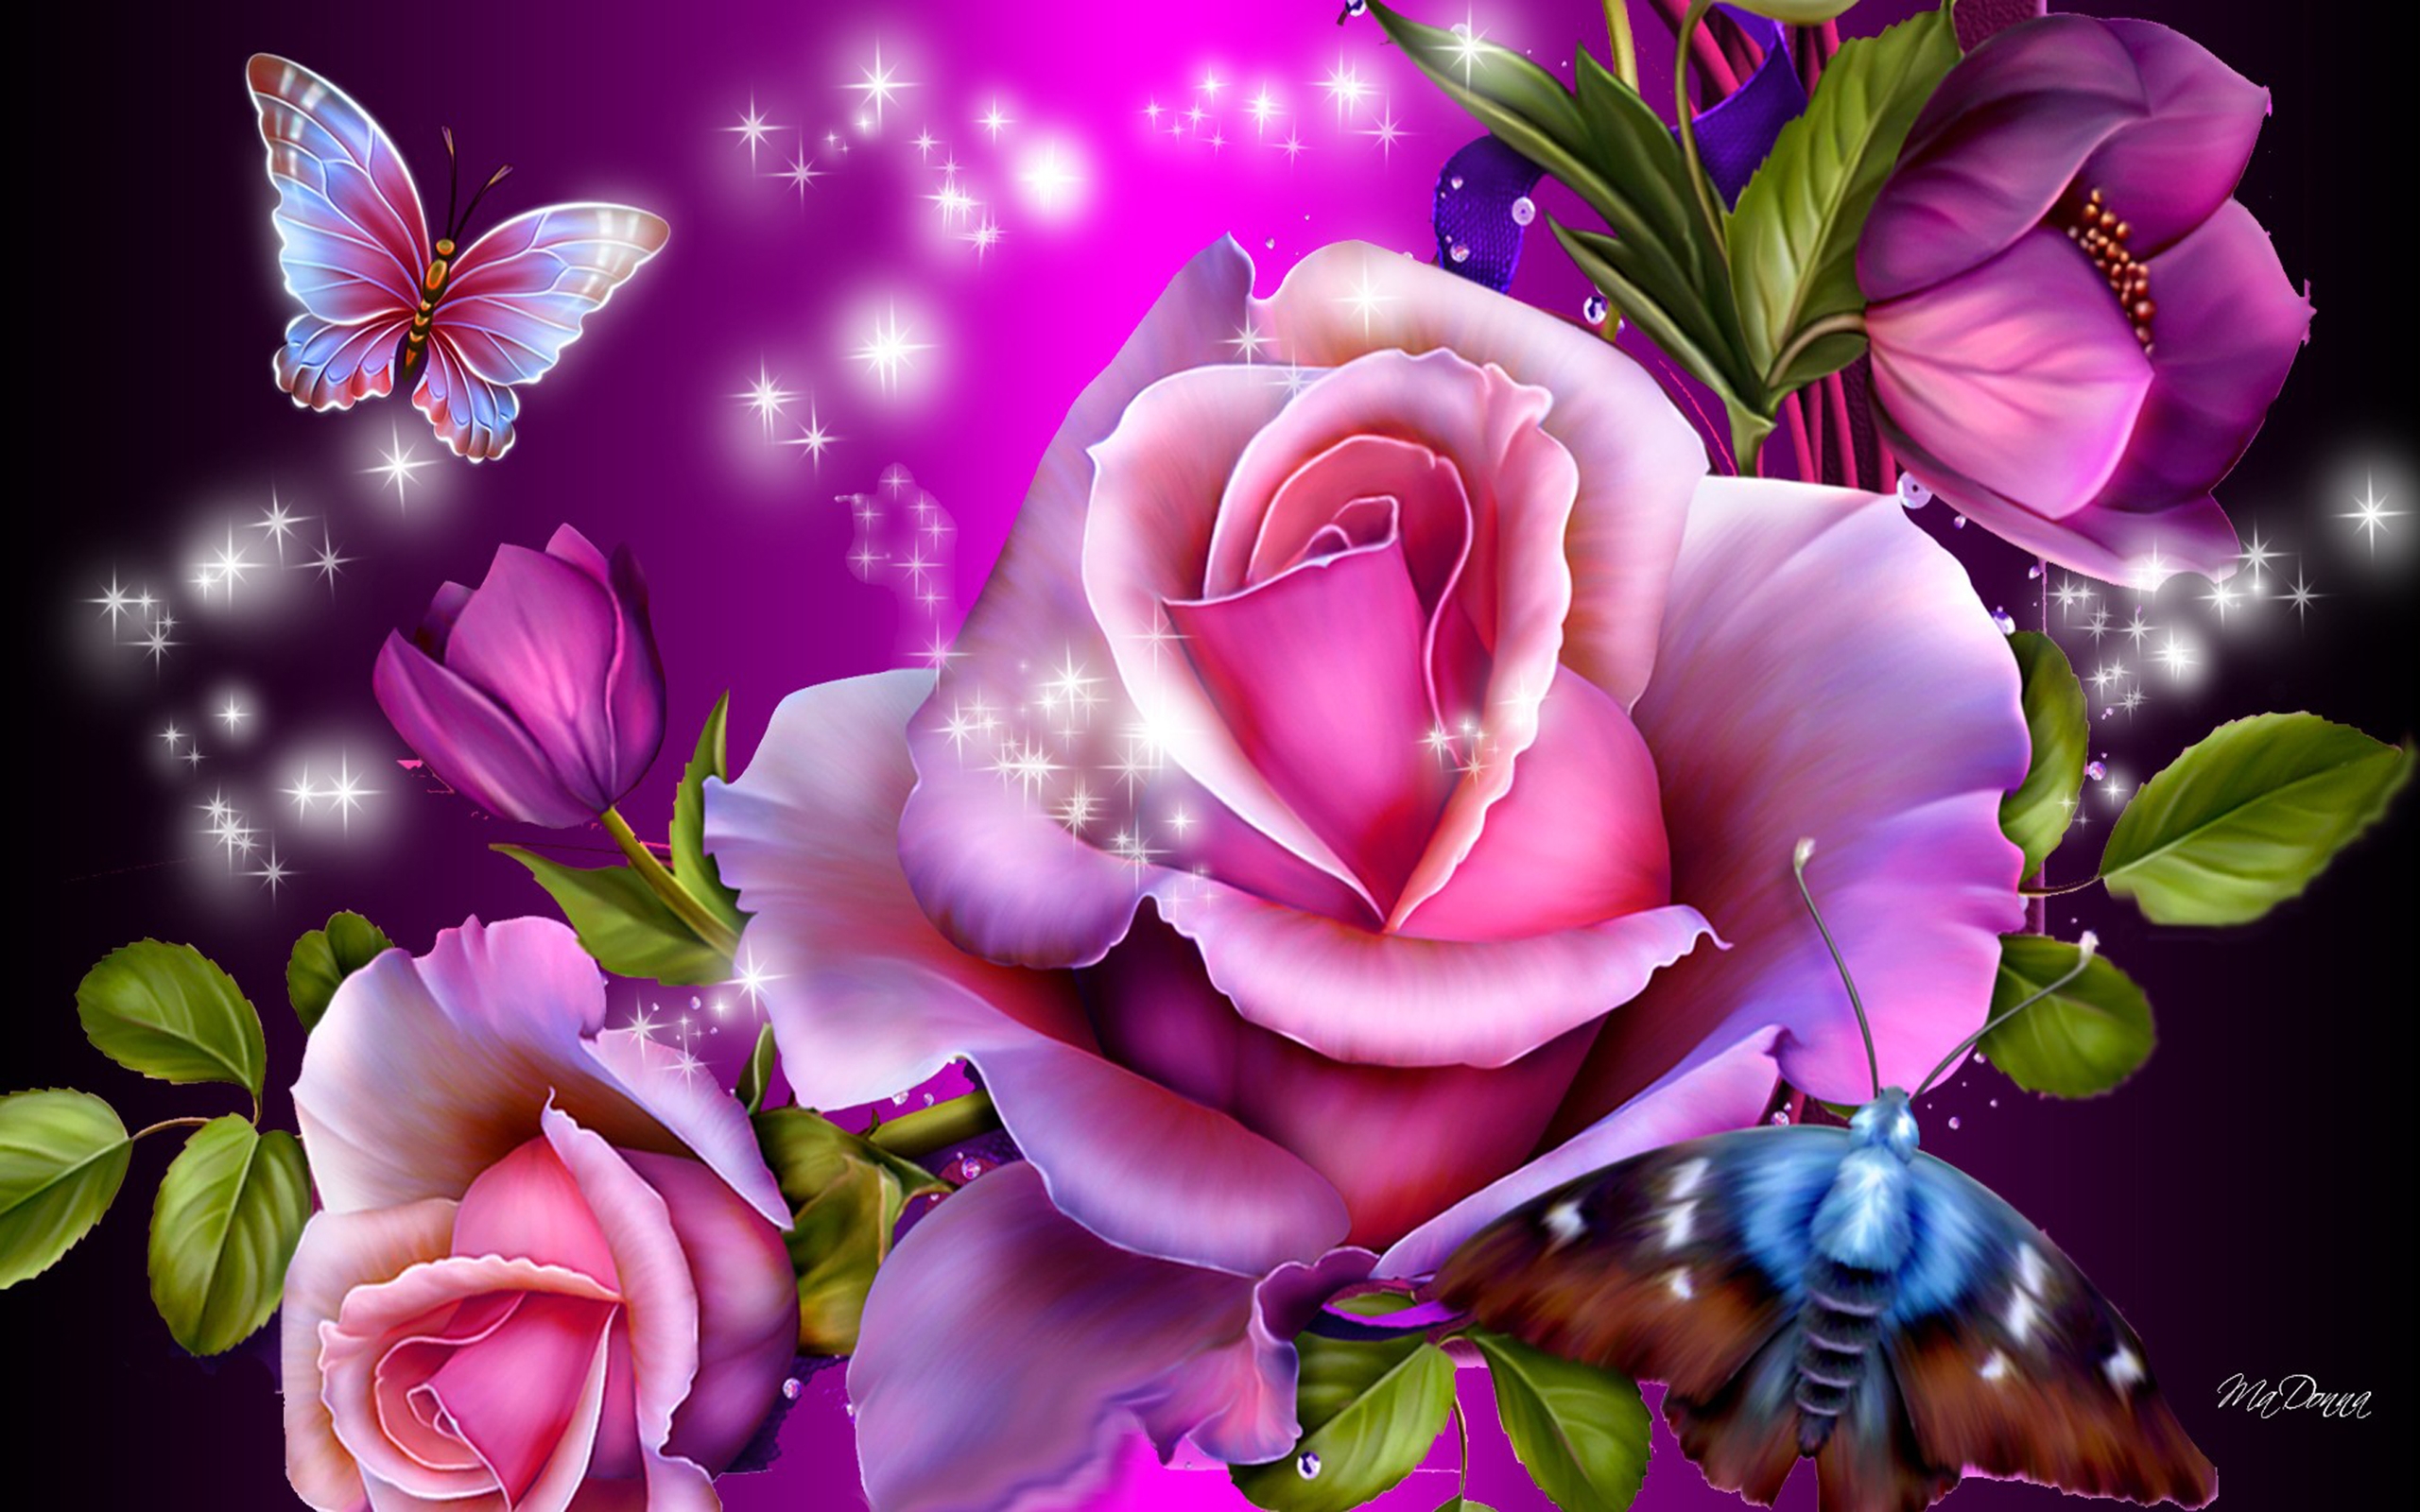 Скачать обои бесплатно Цветок, Роза, Цвета, Бабочка, Листва, Художественные, Розовый Цветок картинка на рабочий стол ПК